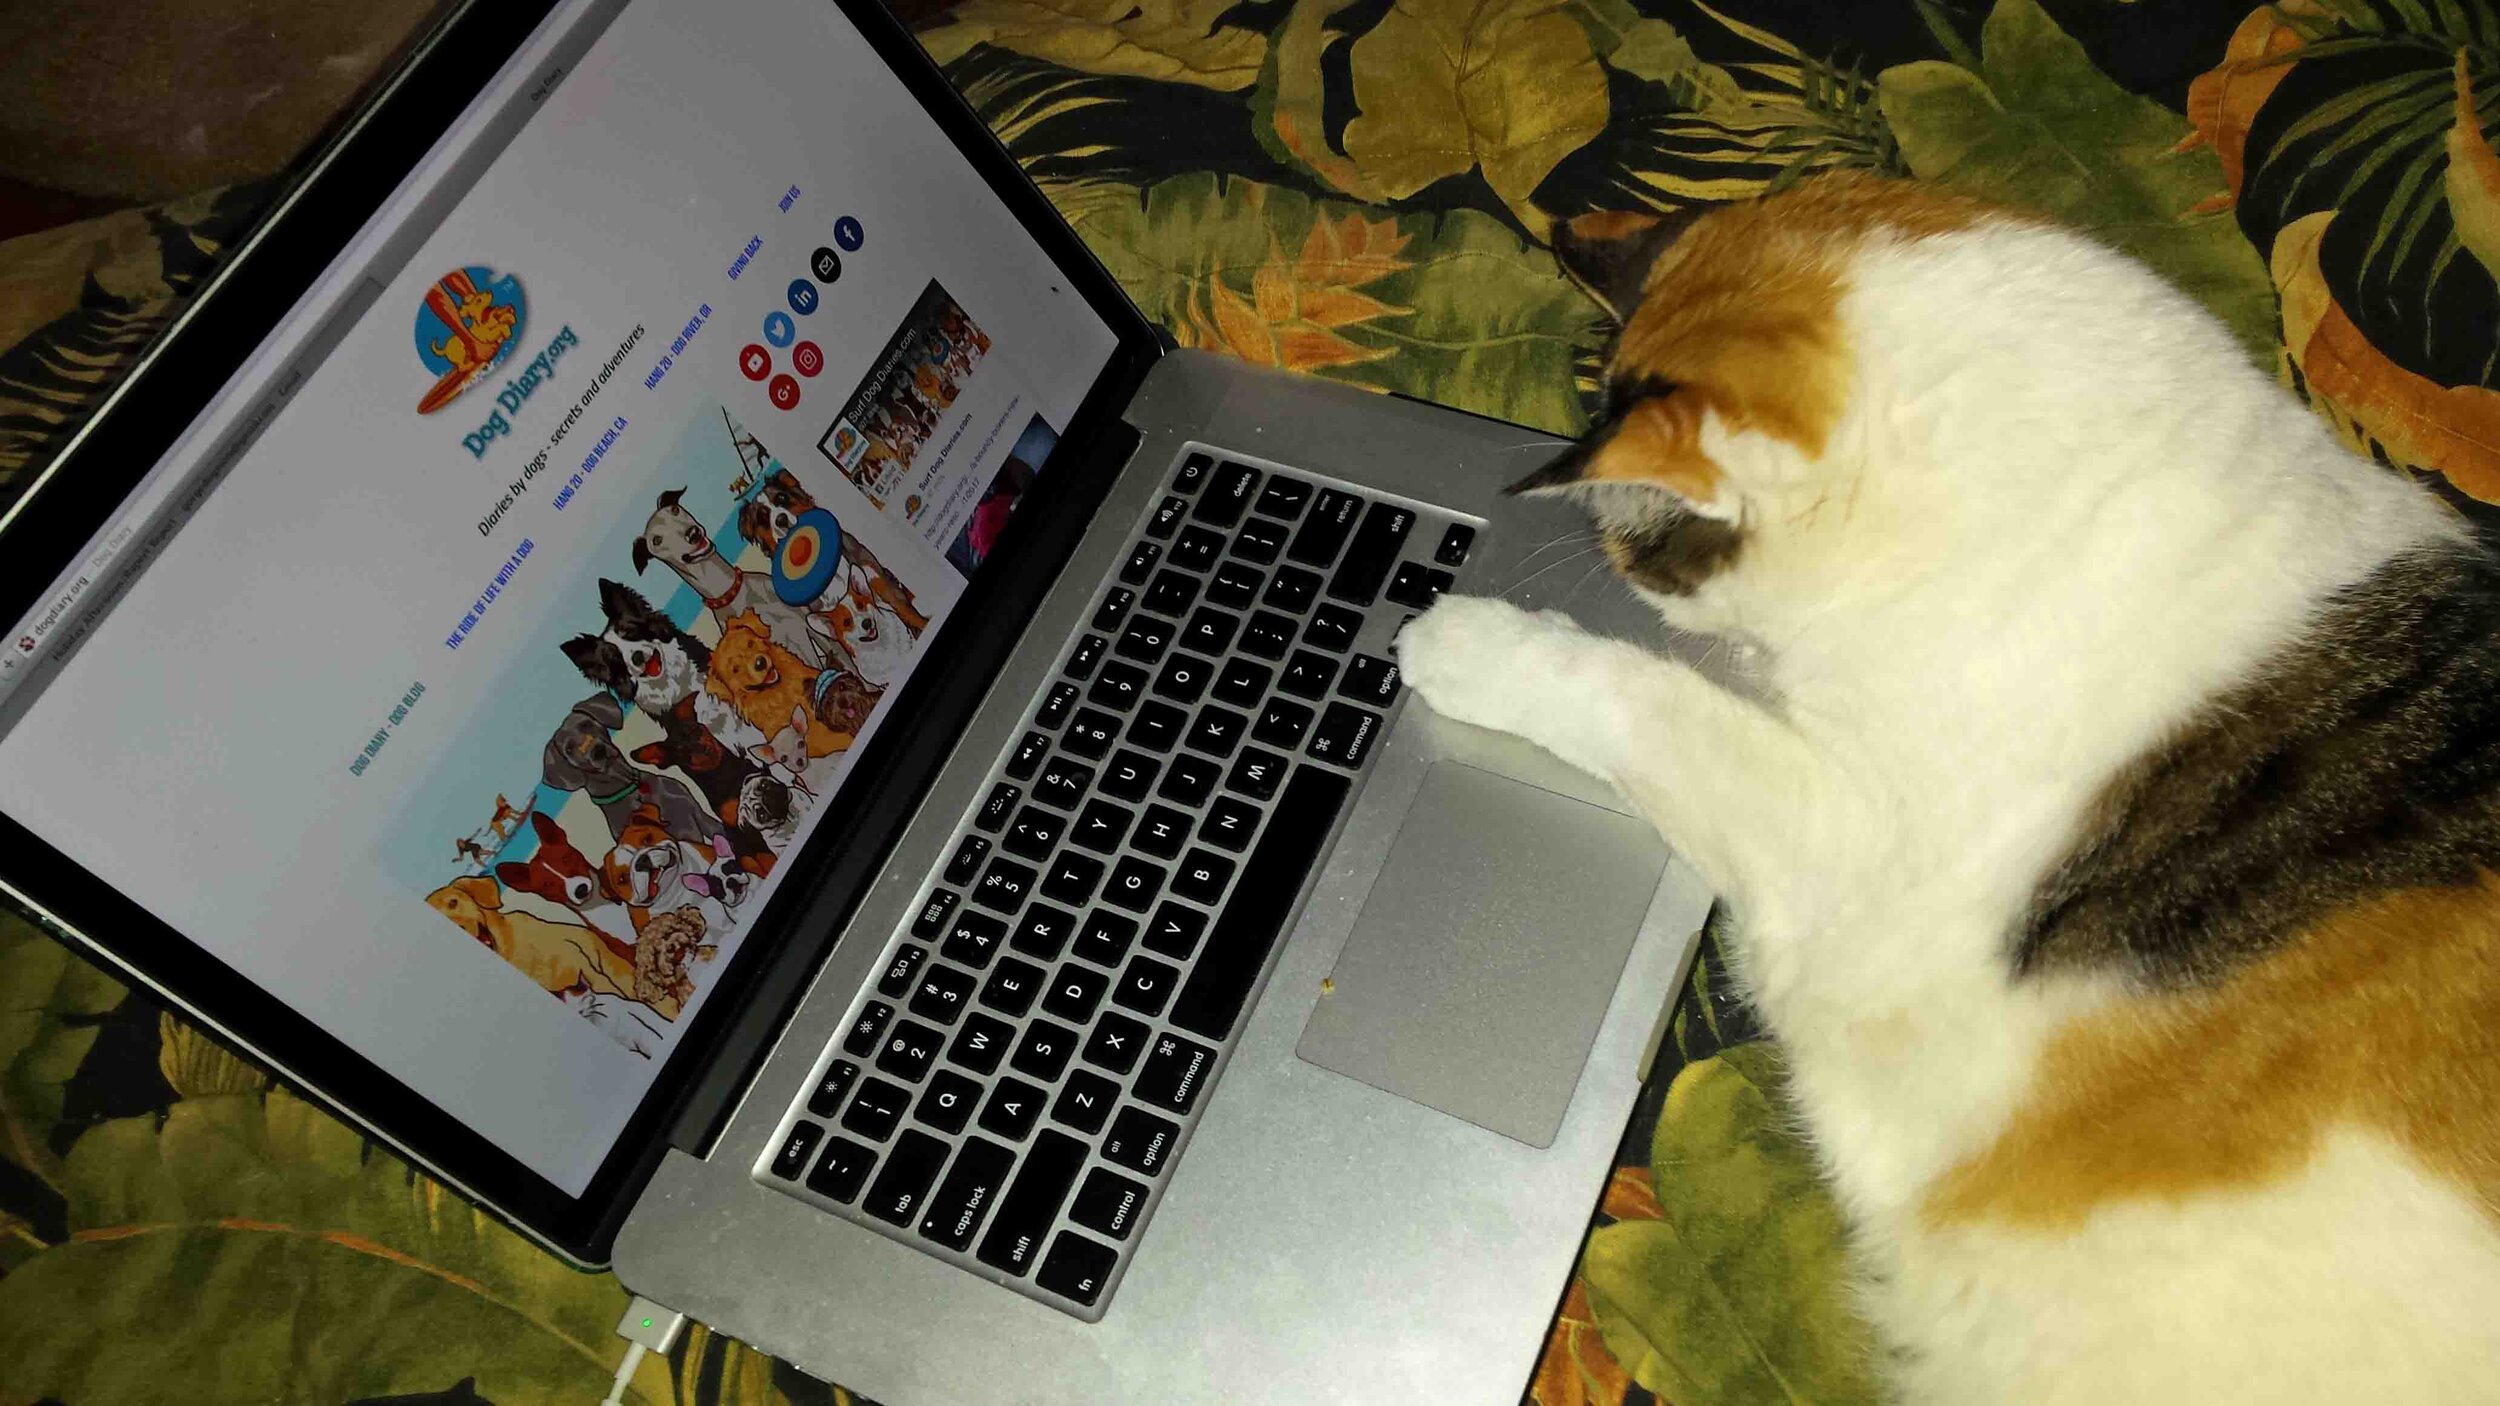 And an ocasional cat laptop.jpg